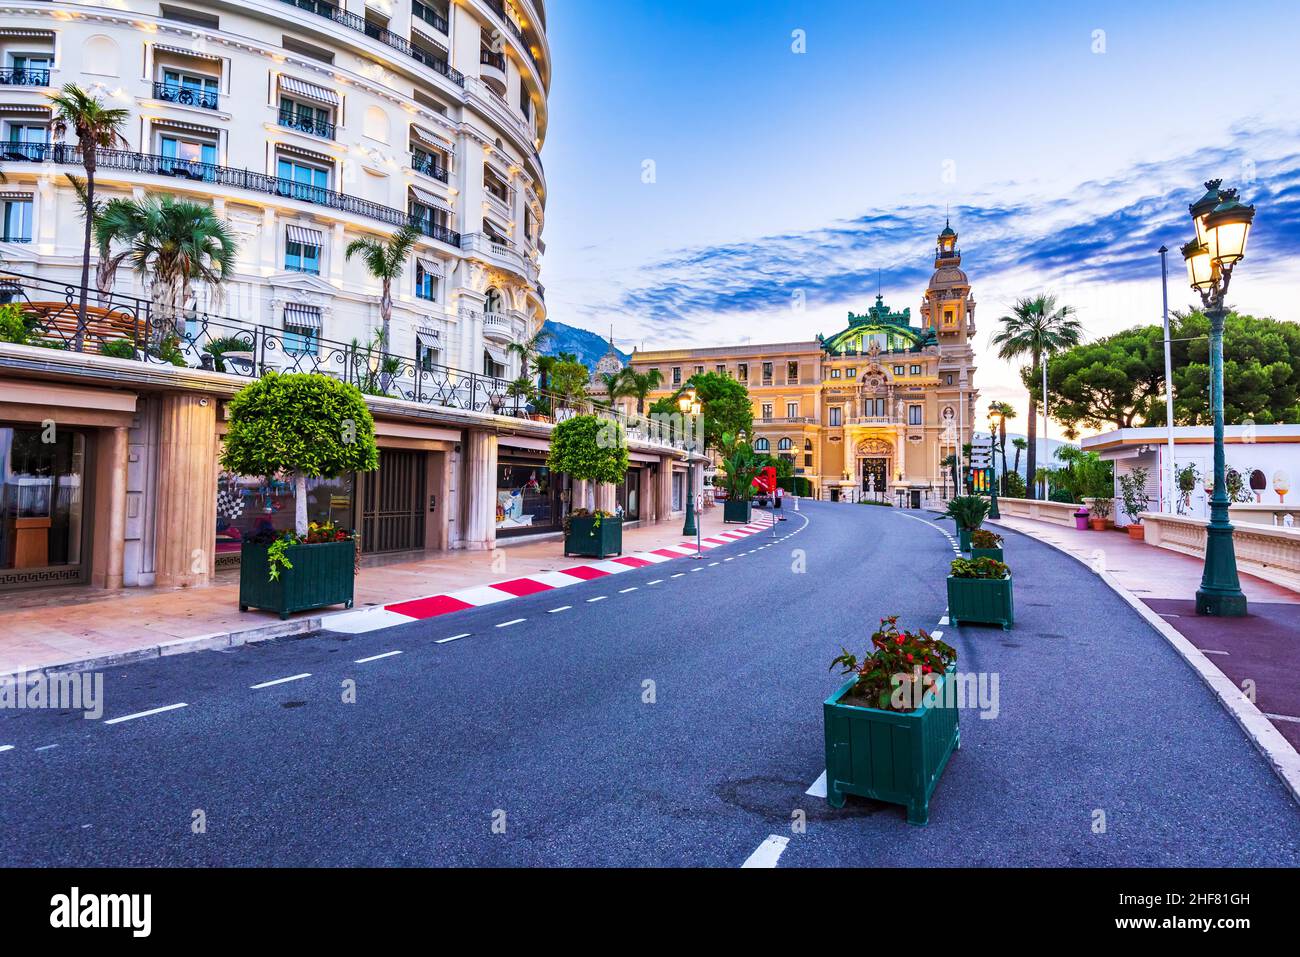 Monte Carlo, Monaco - bella piccola casetta sulla Costa Azzurra, Mar Mediterraneo famoso per lo stile di vita di lusso. Foto Stock